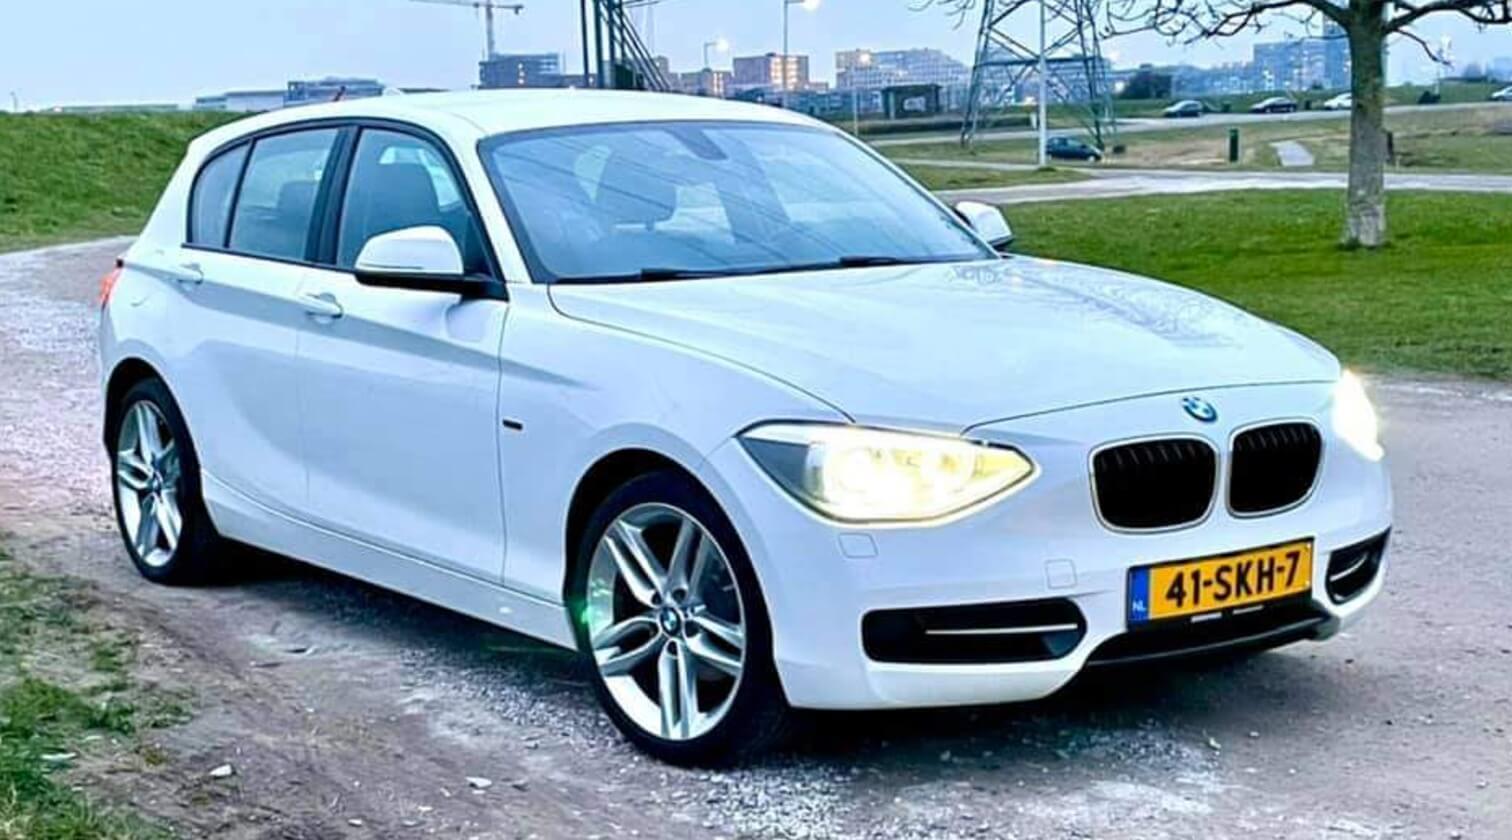 BMW-1-serie-118i-sport-style-461-18-inch-41-skh-7-wit